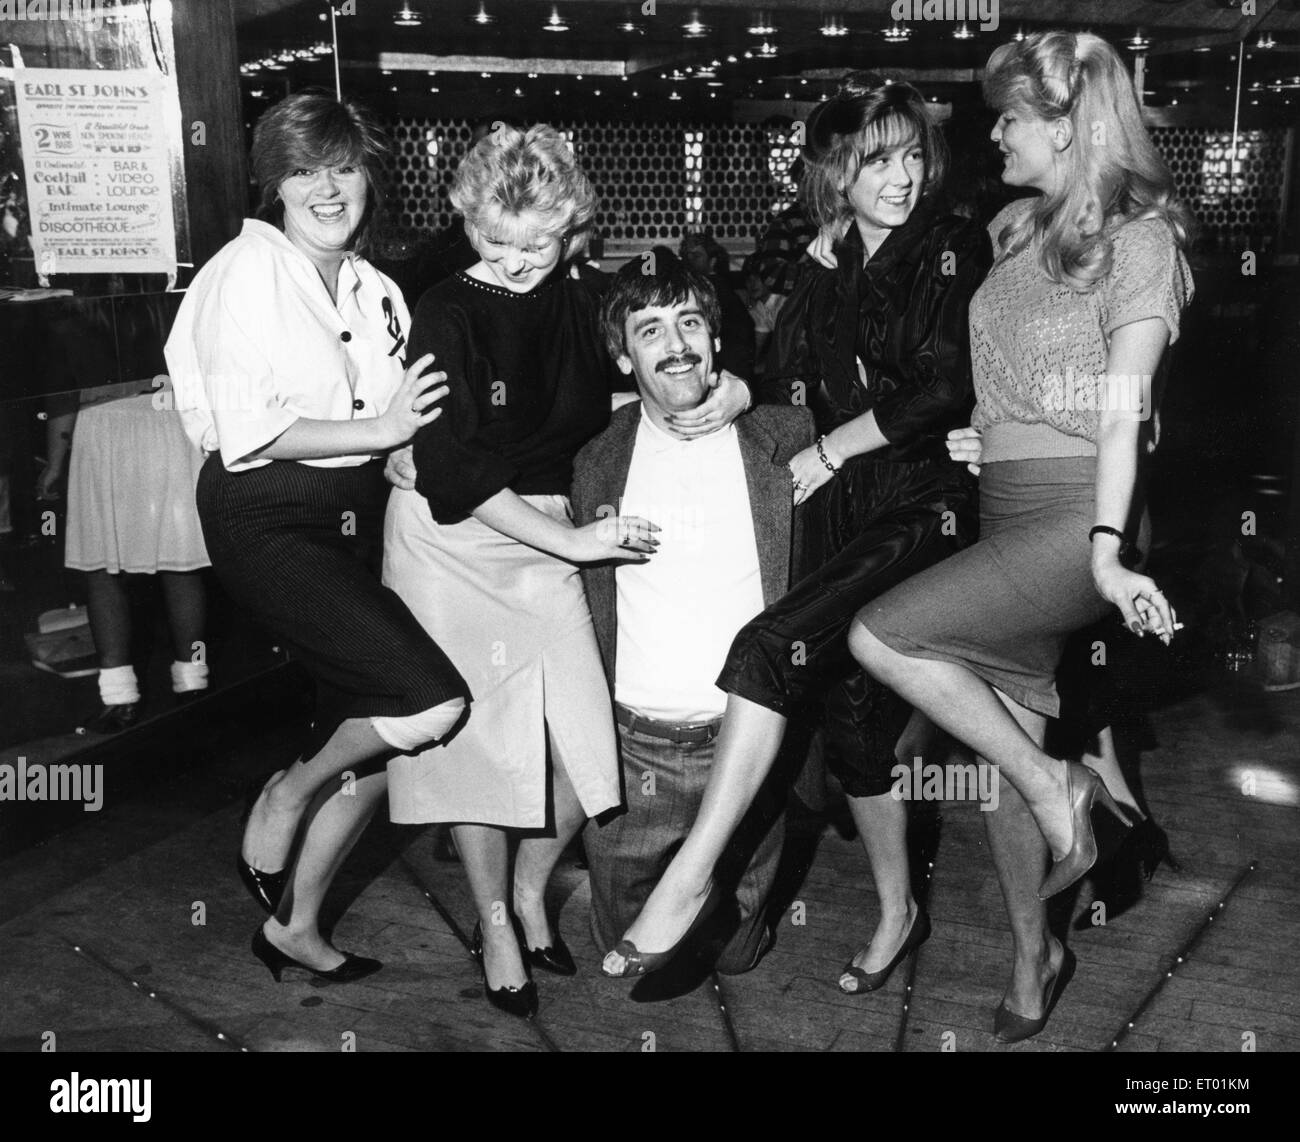 Funtime bei Earl St. John Pfingsten unterhalb der Rockfords Wine Bar. 27. Oktober 1984 Stockfoto